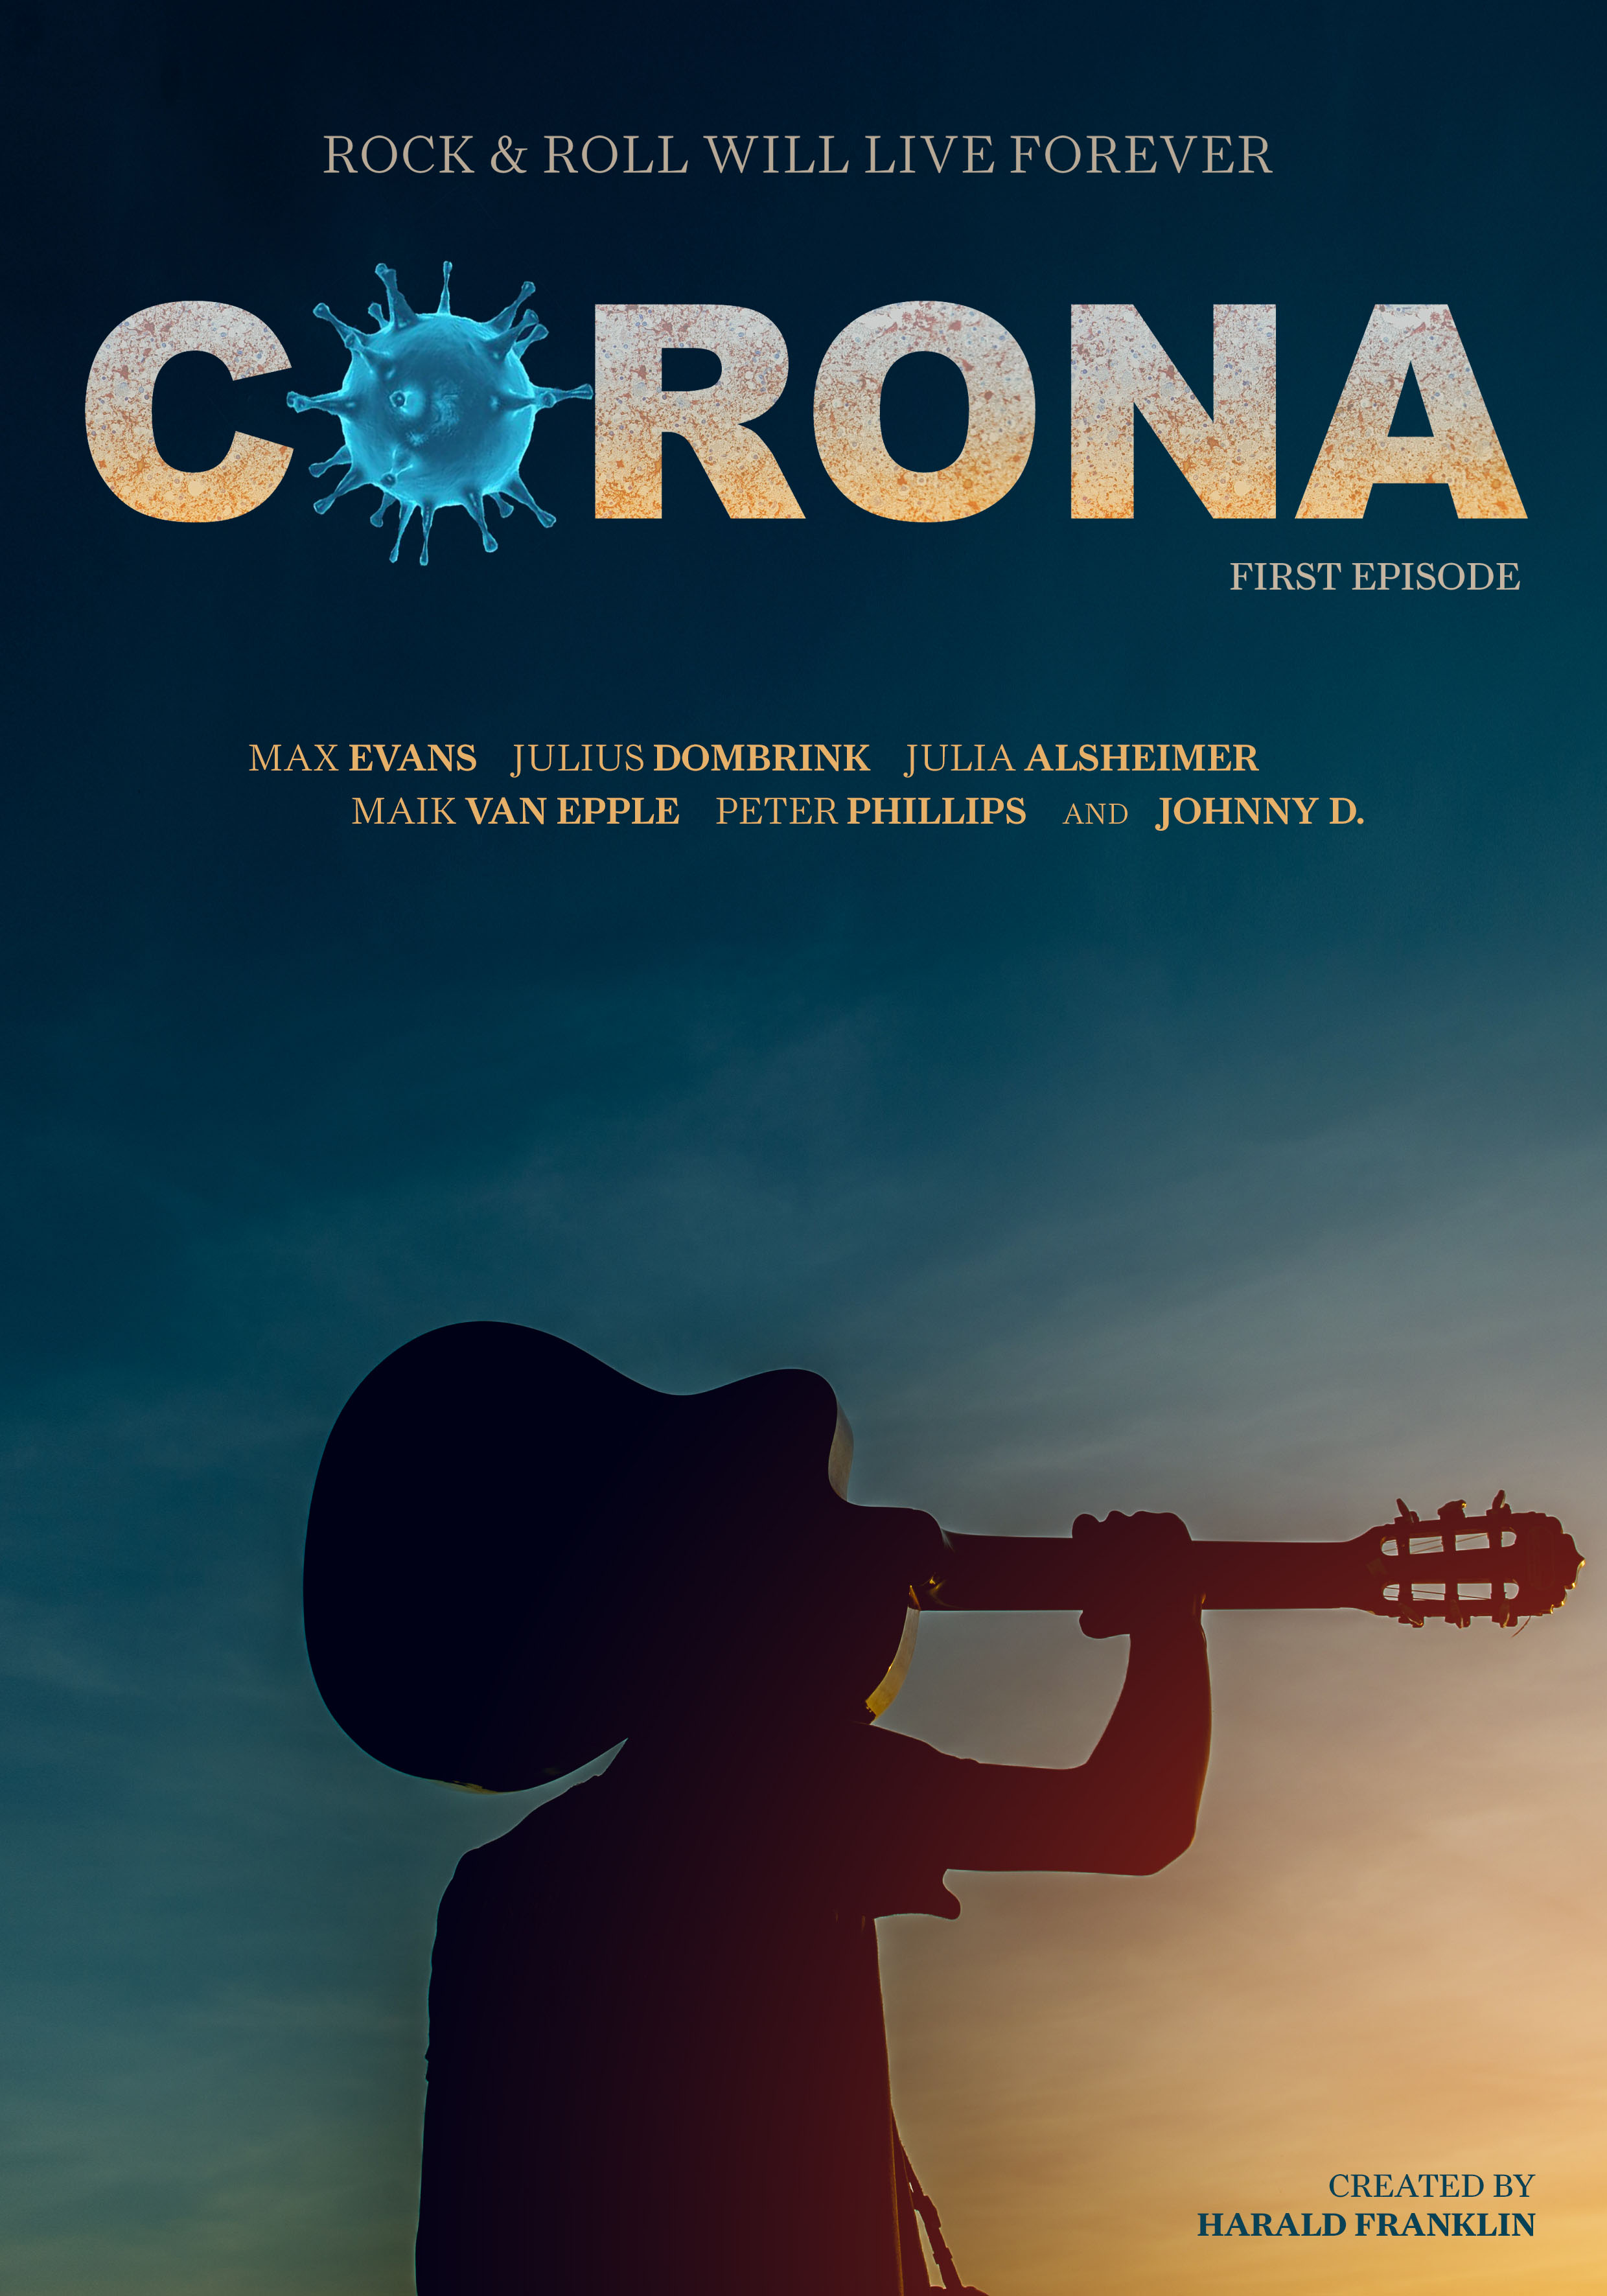 Corona (2021)